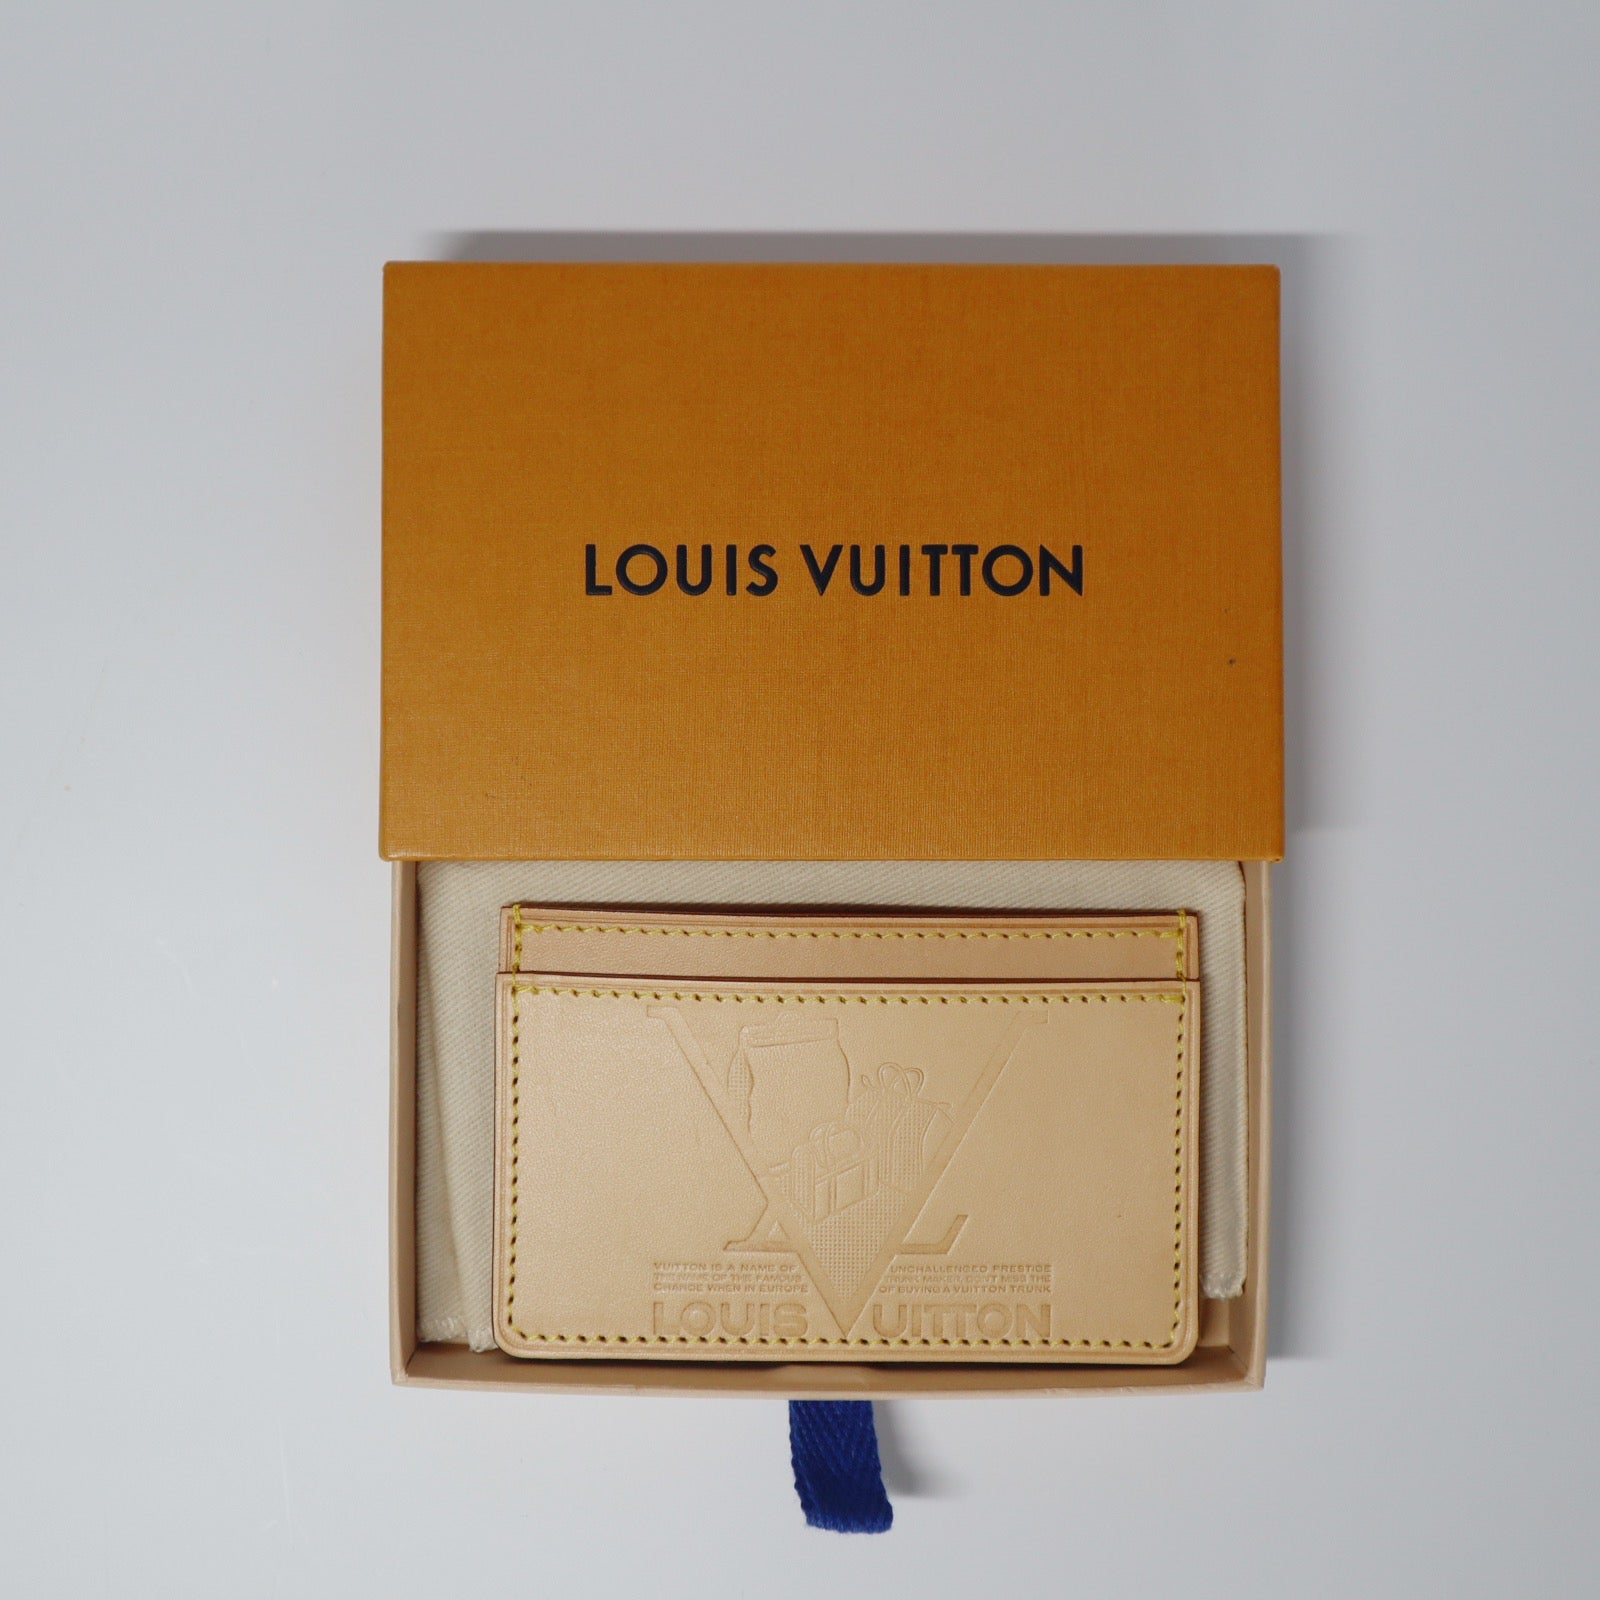 Louis Vuitton Beige Leather Vachetta Voyages Card Holder